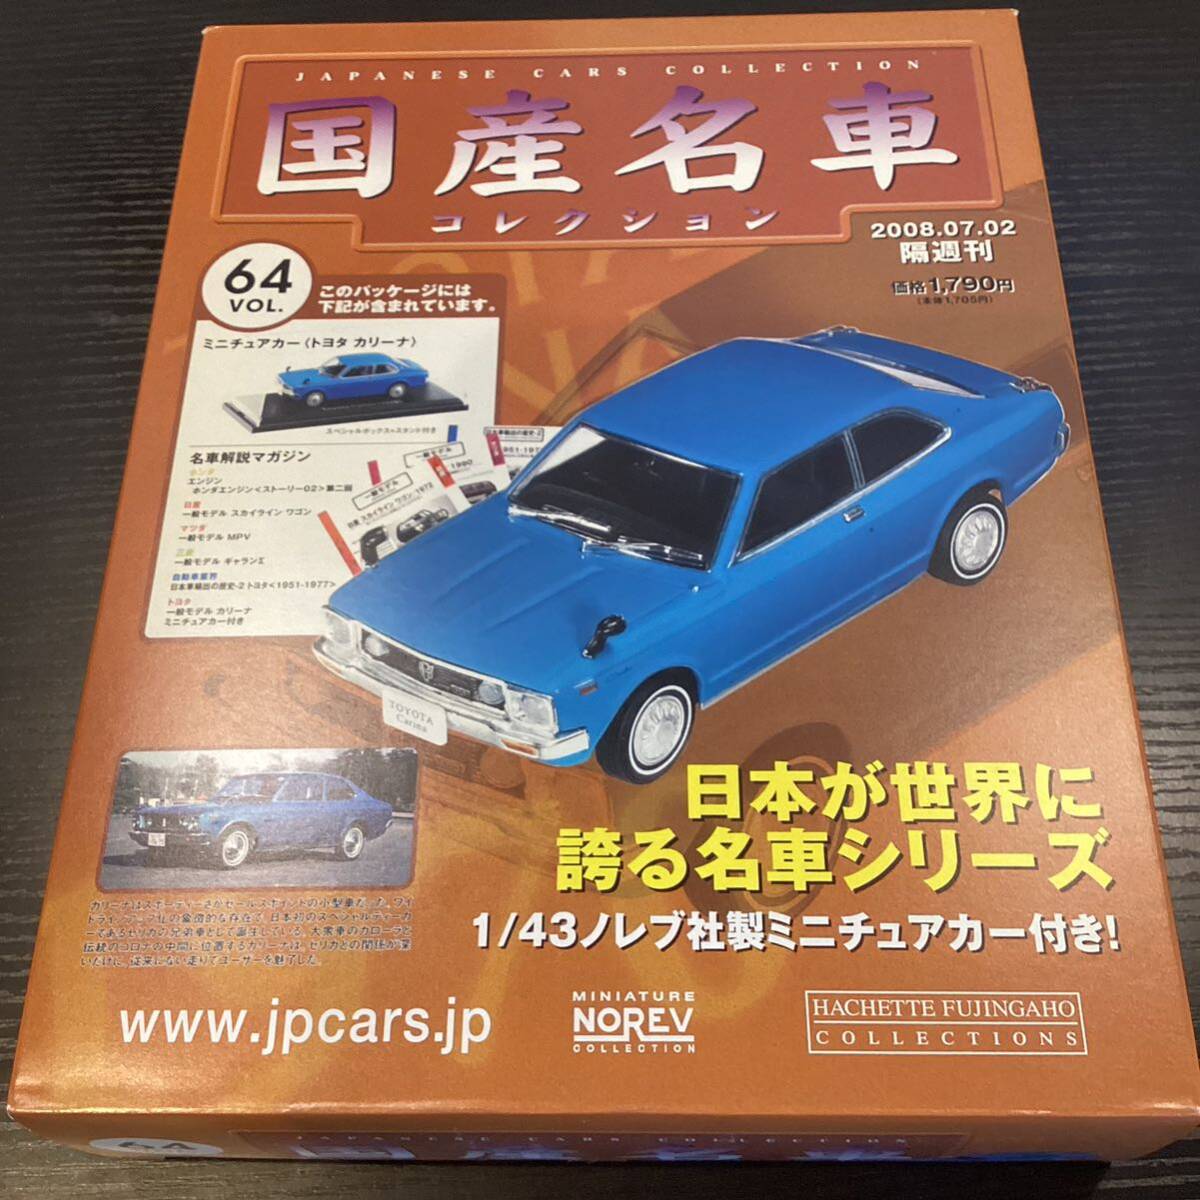 【T11809】 国産名車コレクション 1/43 スケール VOL.64 ミニチュアカー トヨタ カリーナの画像1